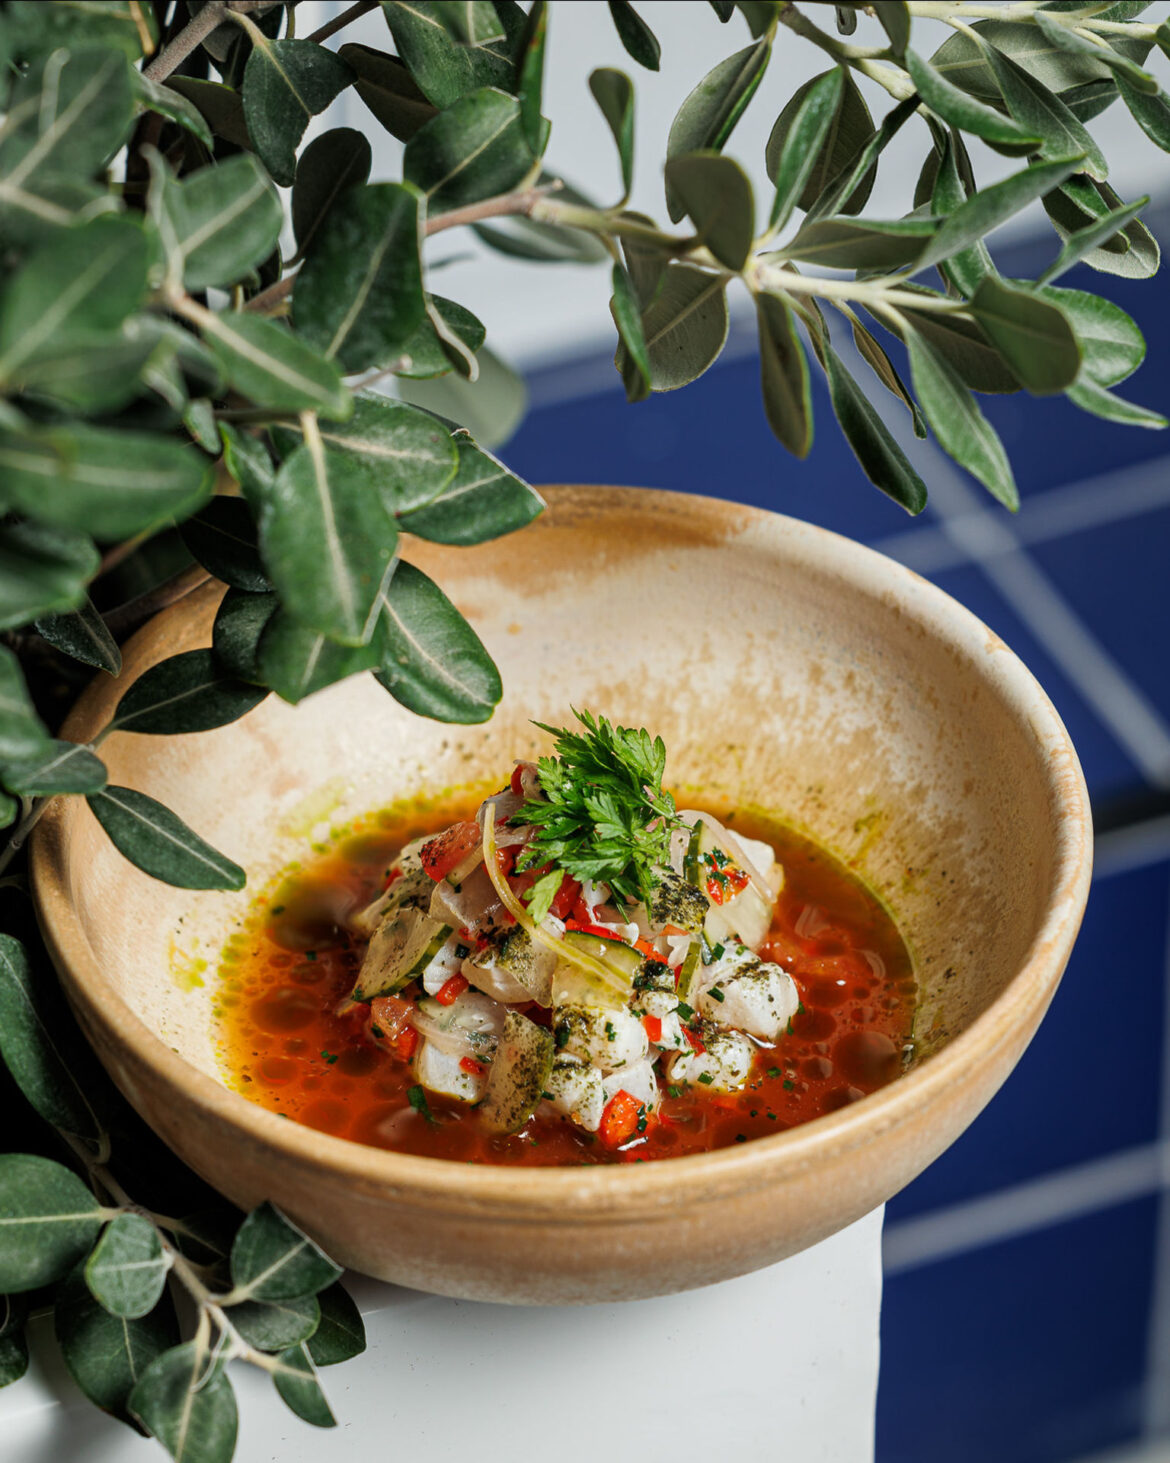 Τα ντοματένια της Αθήνας: 8 αξέχαστα πιάτα με ντομάτα και που τα βρίσκουμε